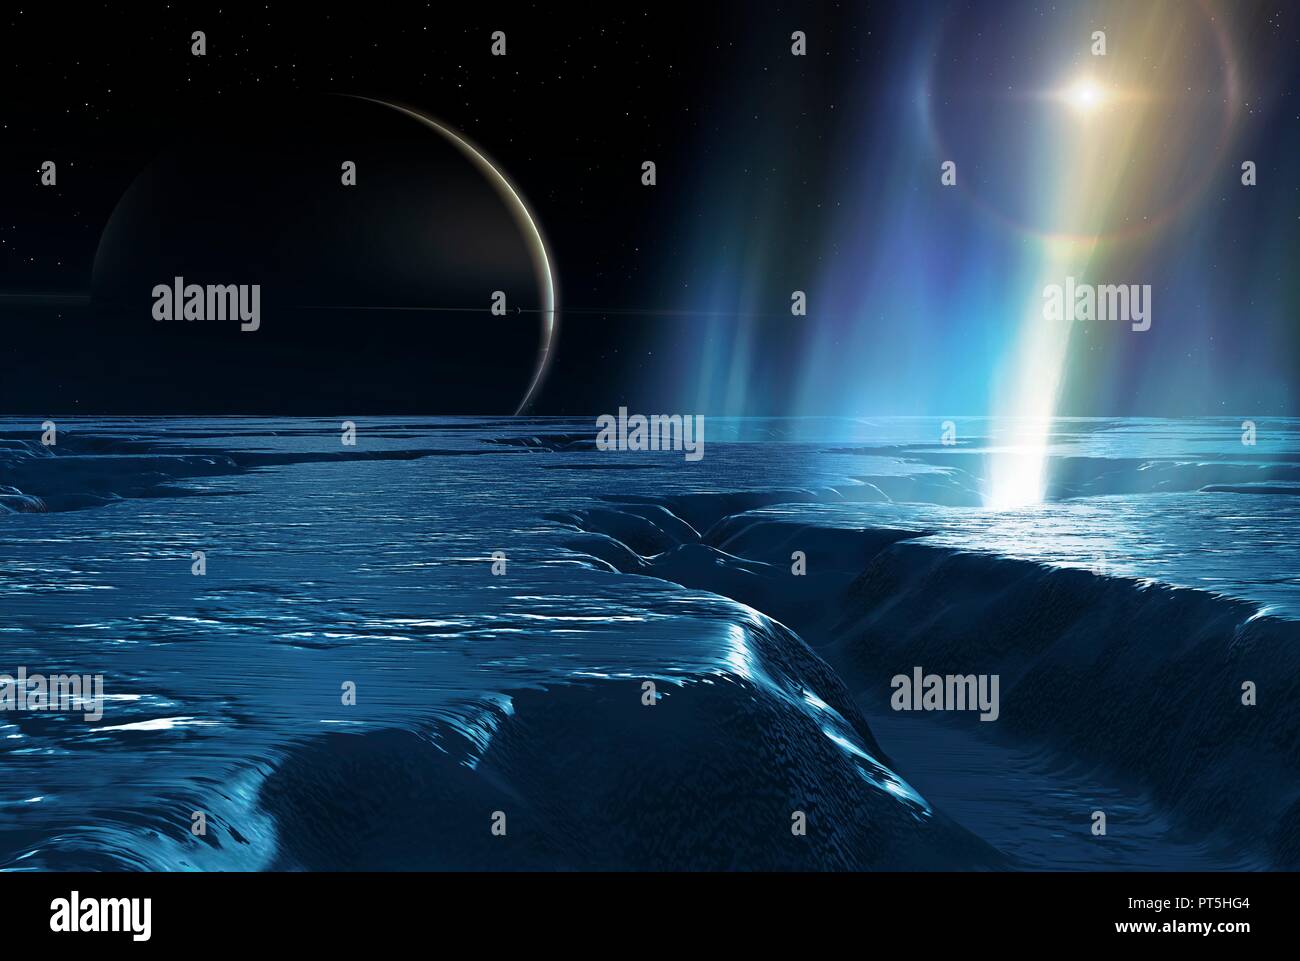 Wasser plumes auf Enceladus, Illustration. Enceladus ist eine mittelgroße Satelliten des Saturn, ca. 500 km über, bekannt seit 1789. Es ist nur ein Zehntel der Größe des größten Saturnmond, Titan. Im Jahr 2005 hat die Raumsonde Cassini entdeckt, dass diese relativ kleine Welt ist, überraschend, geologisch aktiv. Geysir - wie Wasserstrahlen wurden gesehen, Belüftung von der Mond südlich-polare Oberfläche ices, belüftet, durch einen Prozess namens cryovolcanism ('kalten Vulkanismus"). Einen anderen Satelliten, Mimas, ist auf Saturns Flugzeug gesehen. Stockfoto